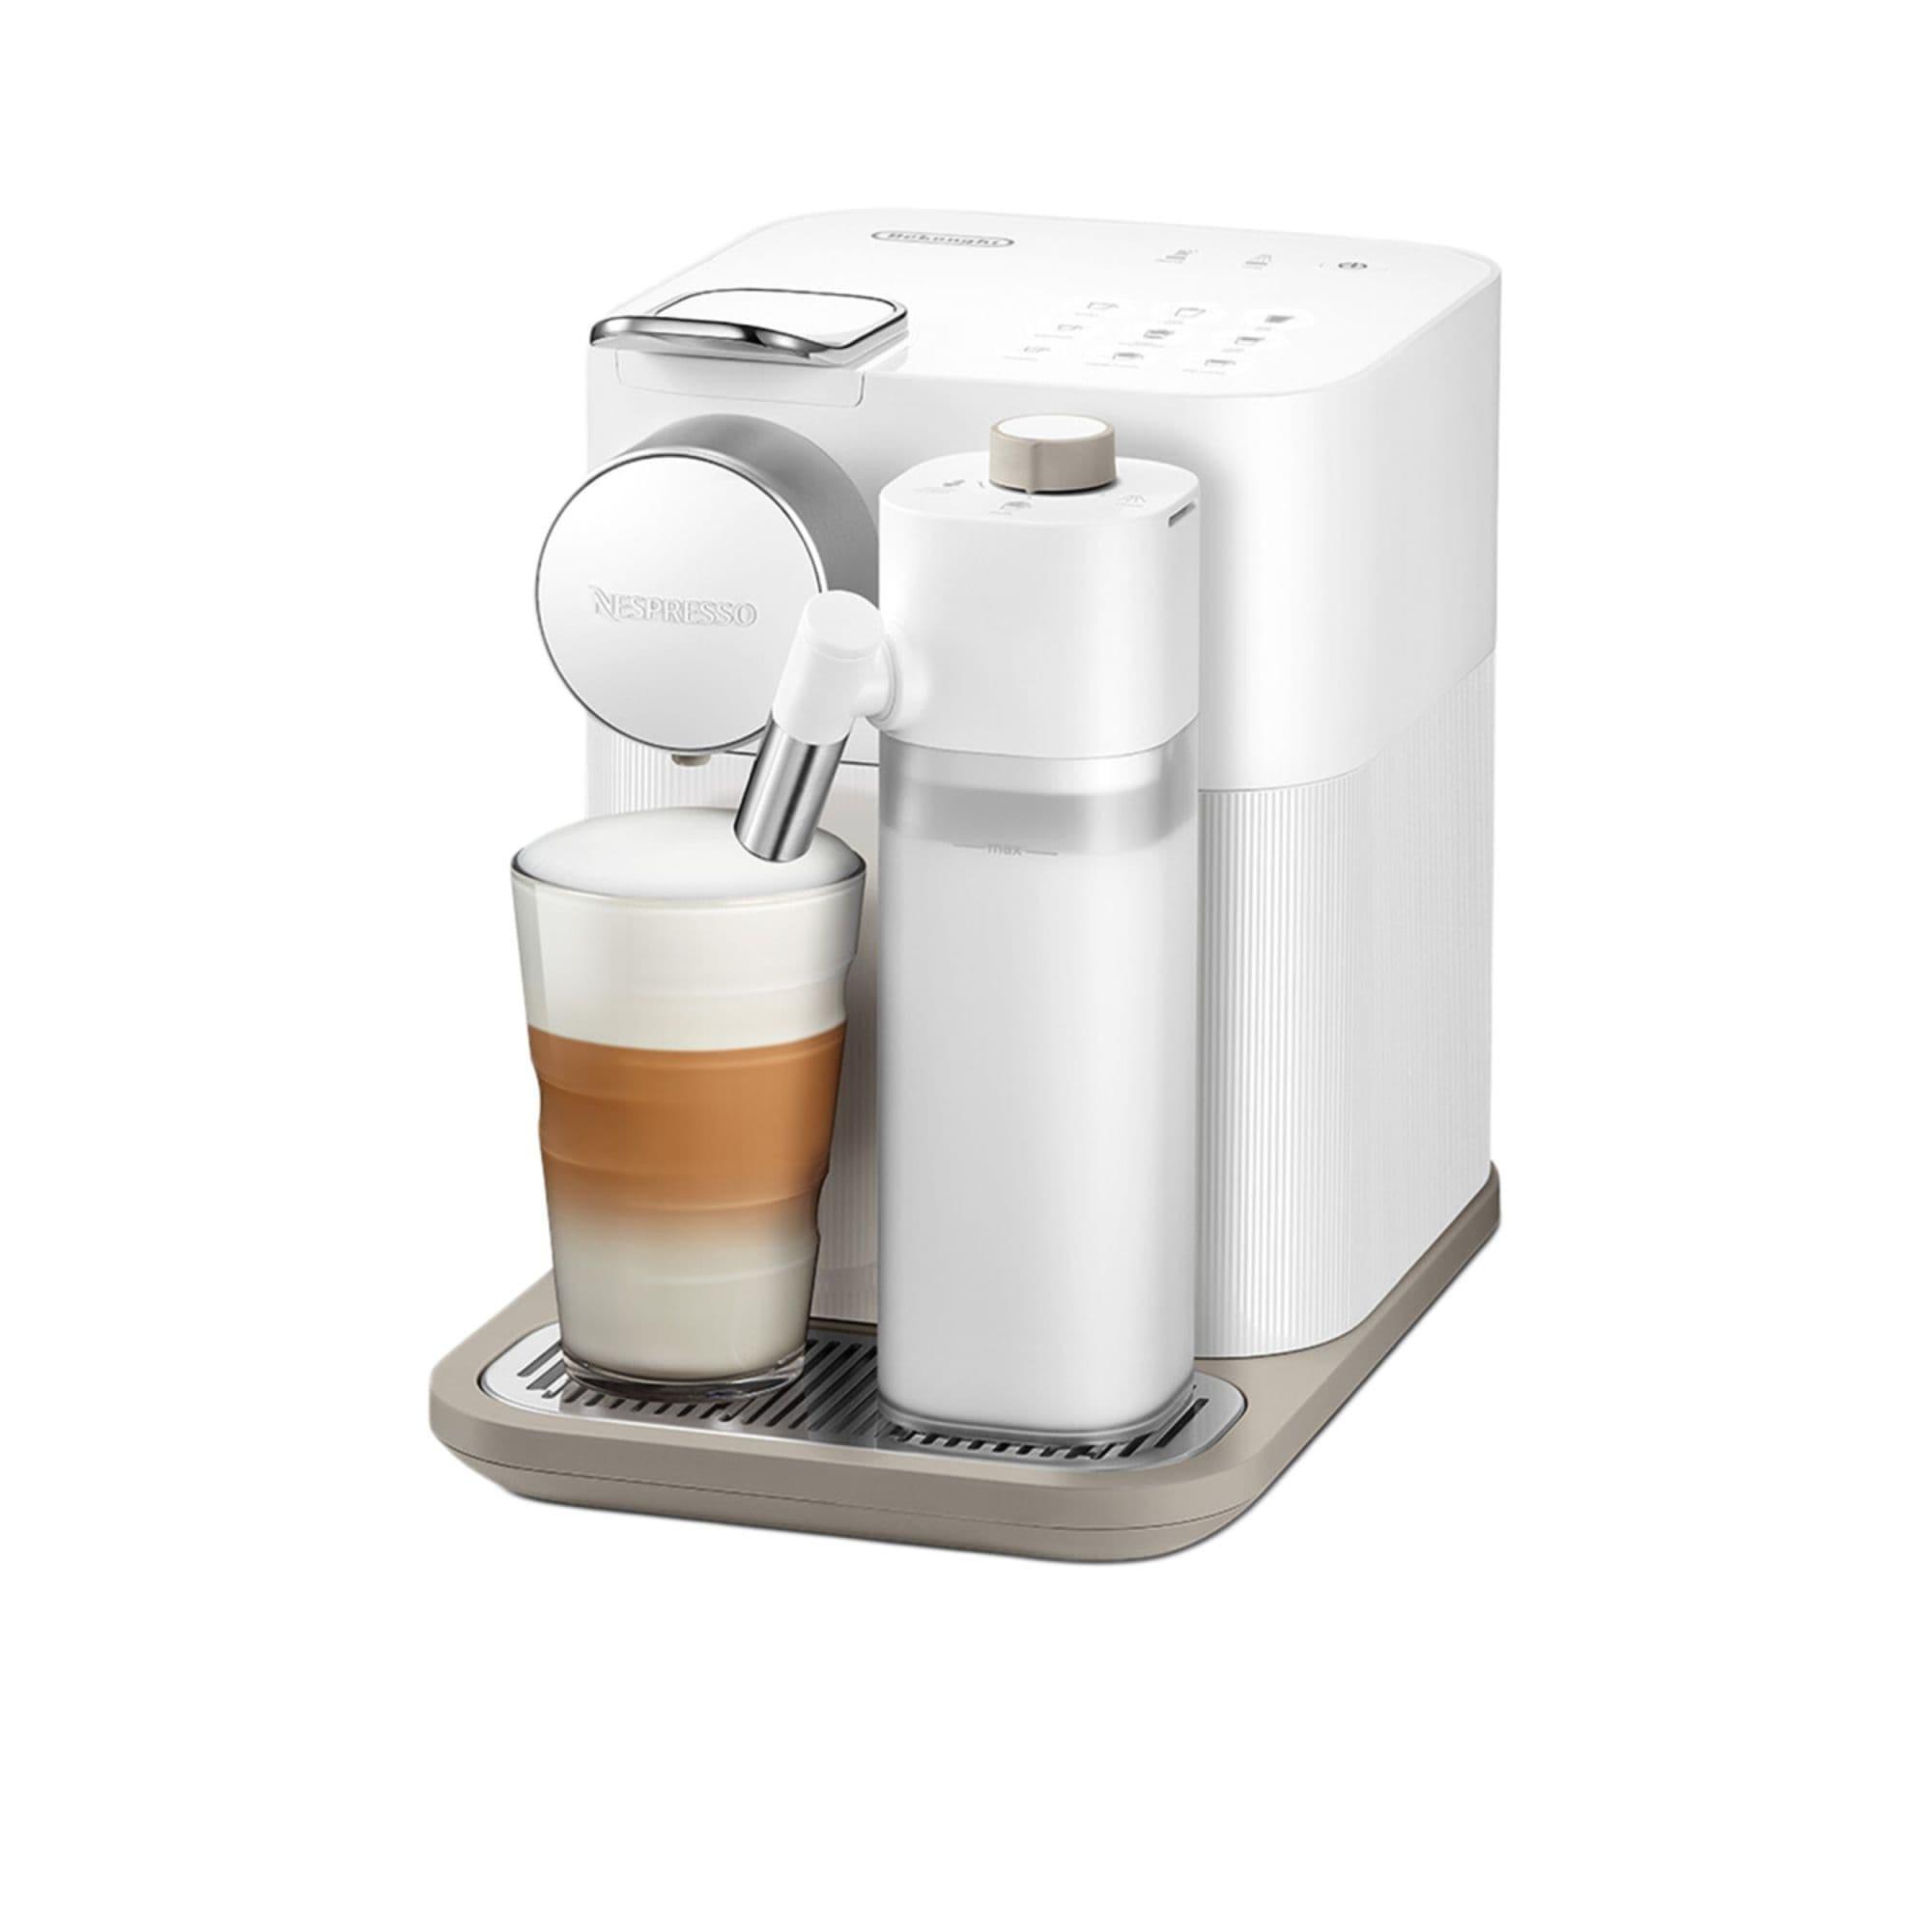 DeLonghi Nespresso Gran Lattisima EN640W Automatic Capsule Coffee Machine White Image 3